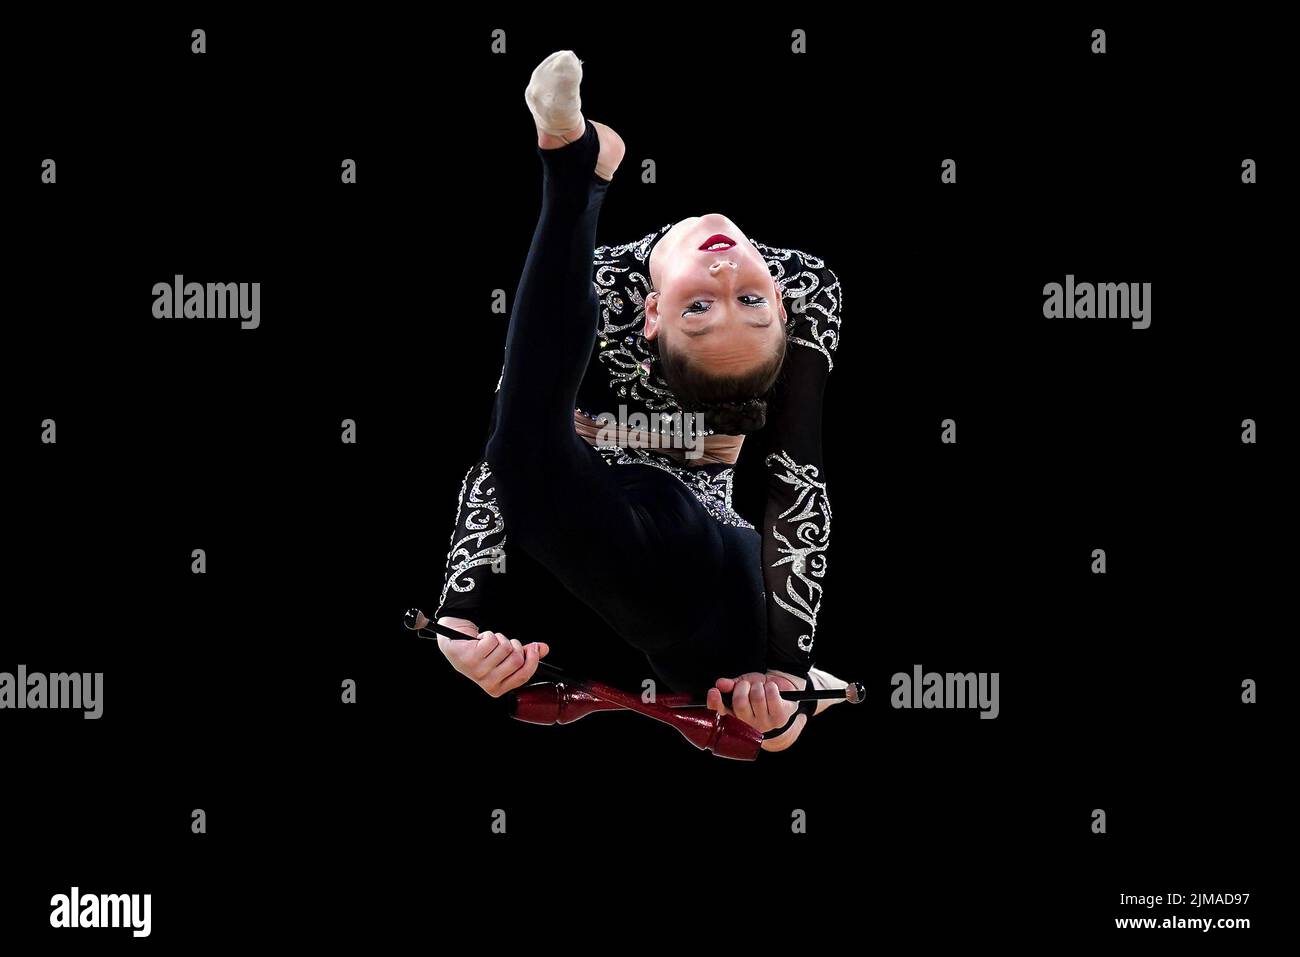 Die Engländerin Marfa Ekimova beim rhythmischen gymnastischen Einzel-Allround-Finale in der Arena Birmingham am achten Tag der Commonwealth Games 2022 in Birmingham. Bilddatum: Freitag, 5. August 2022. Stockfoto